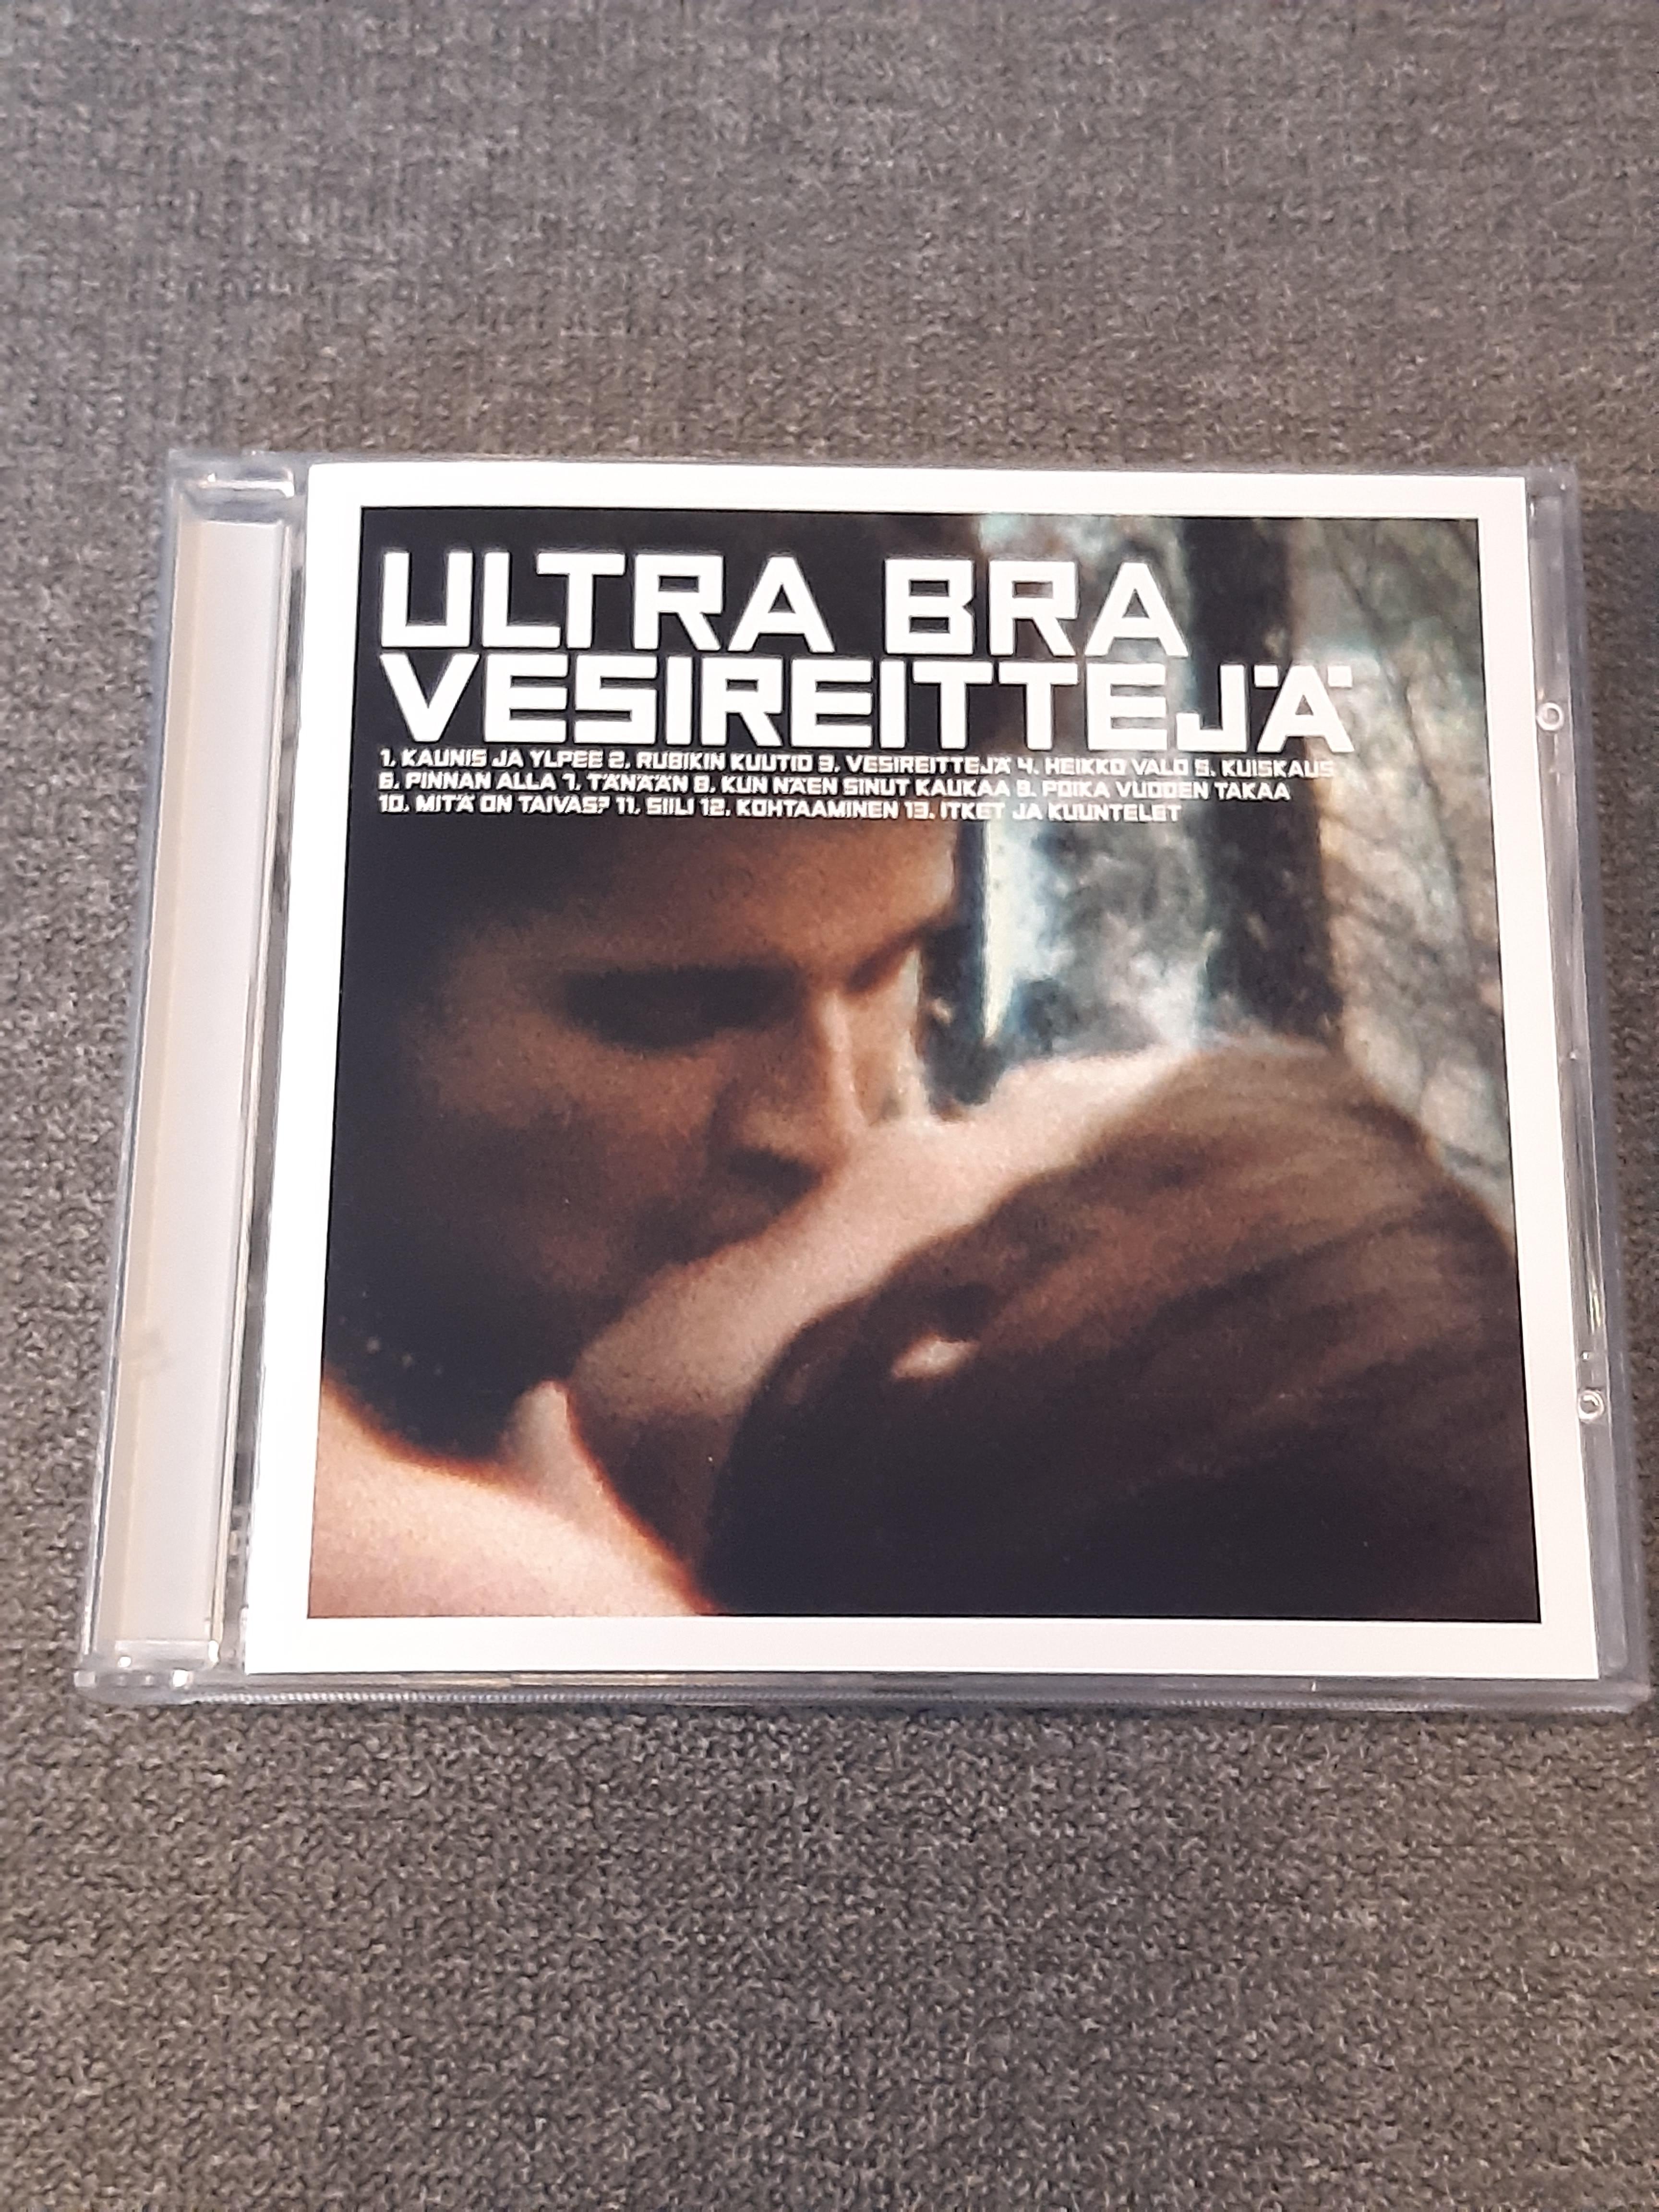 Ultra Bra - Vesireittejä - CD - (käytetty)